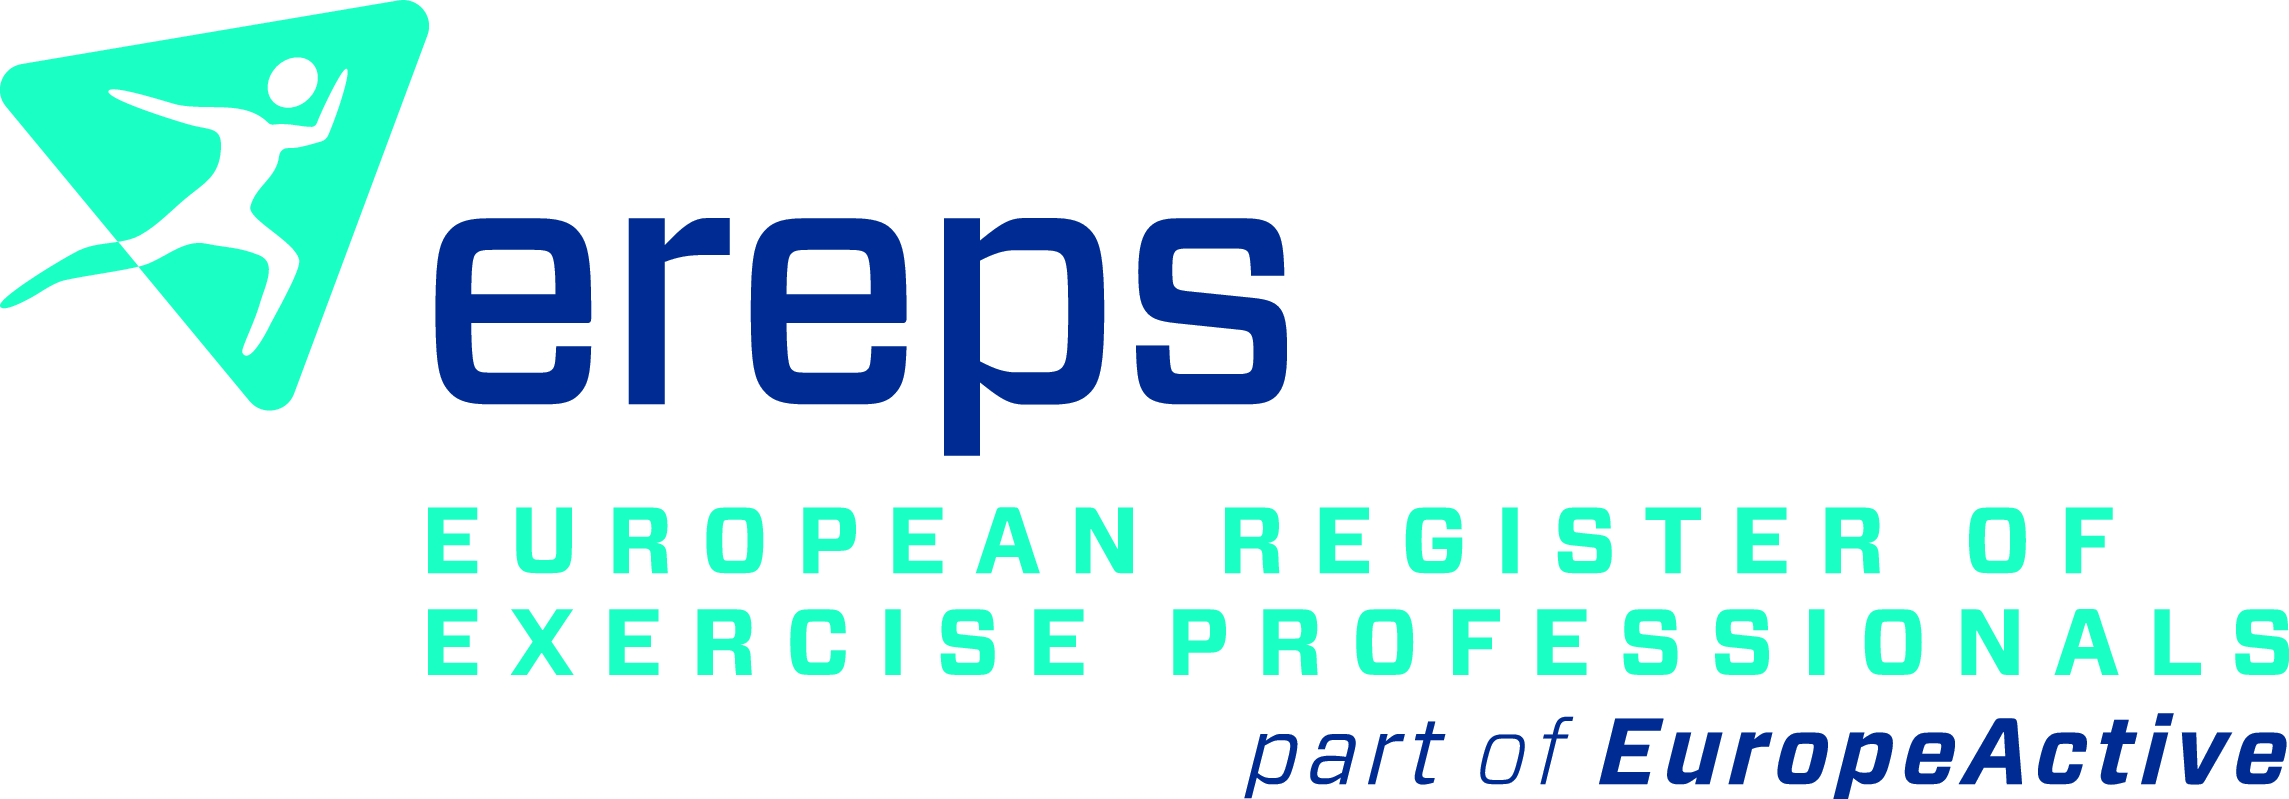 EREPS-logo-fc.png